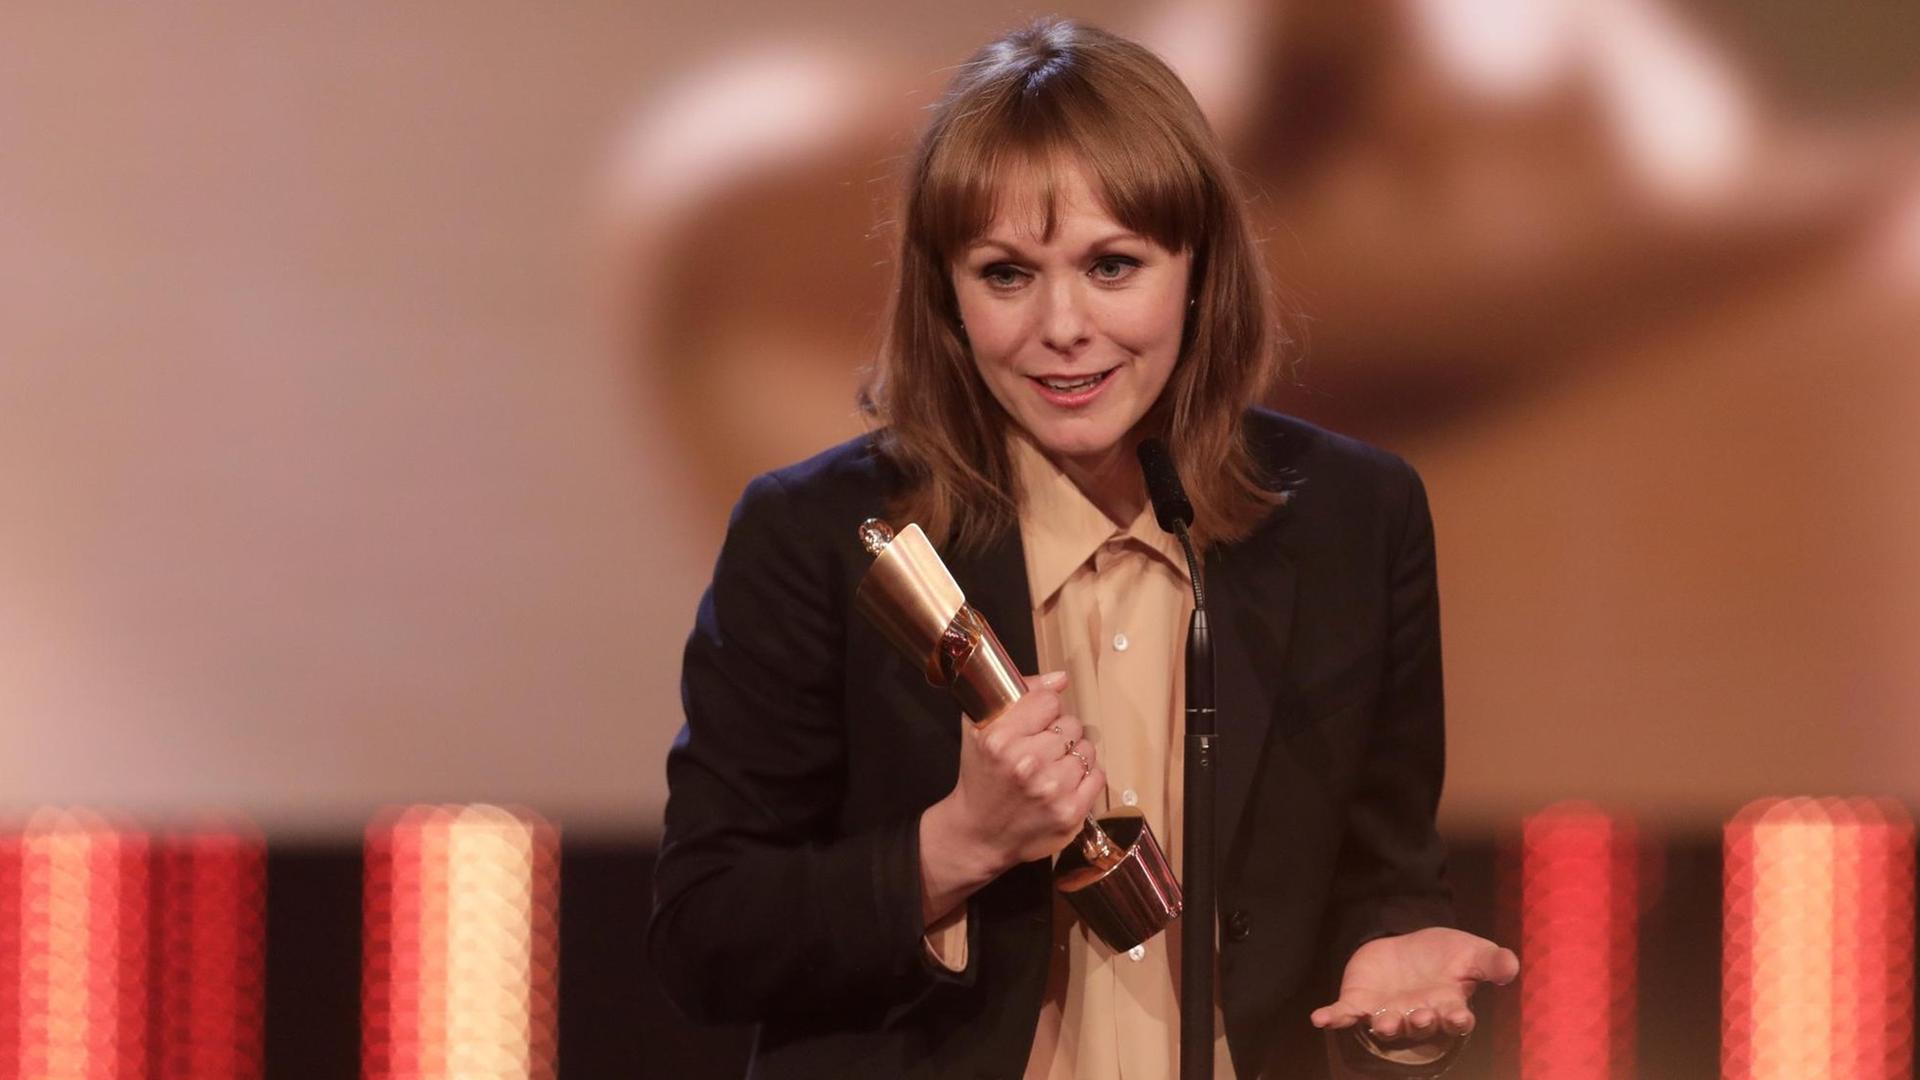 Maren Ade hält am 28.04.2017 in Berlin bei der Verleihung des 67. Deutschen Filmpreises "Lola" die Trophäe für das "Beste Drehbuch" (Toni Erdmann).